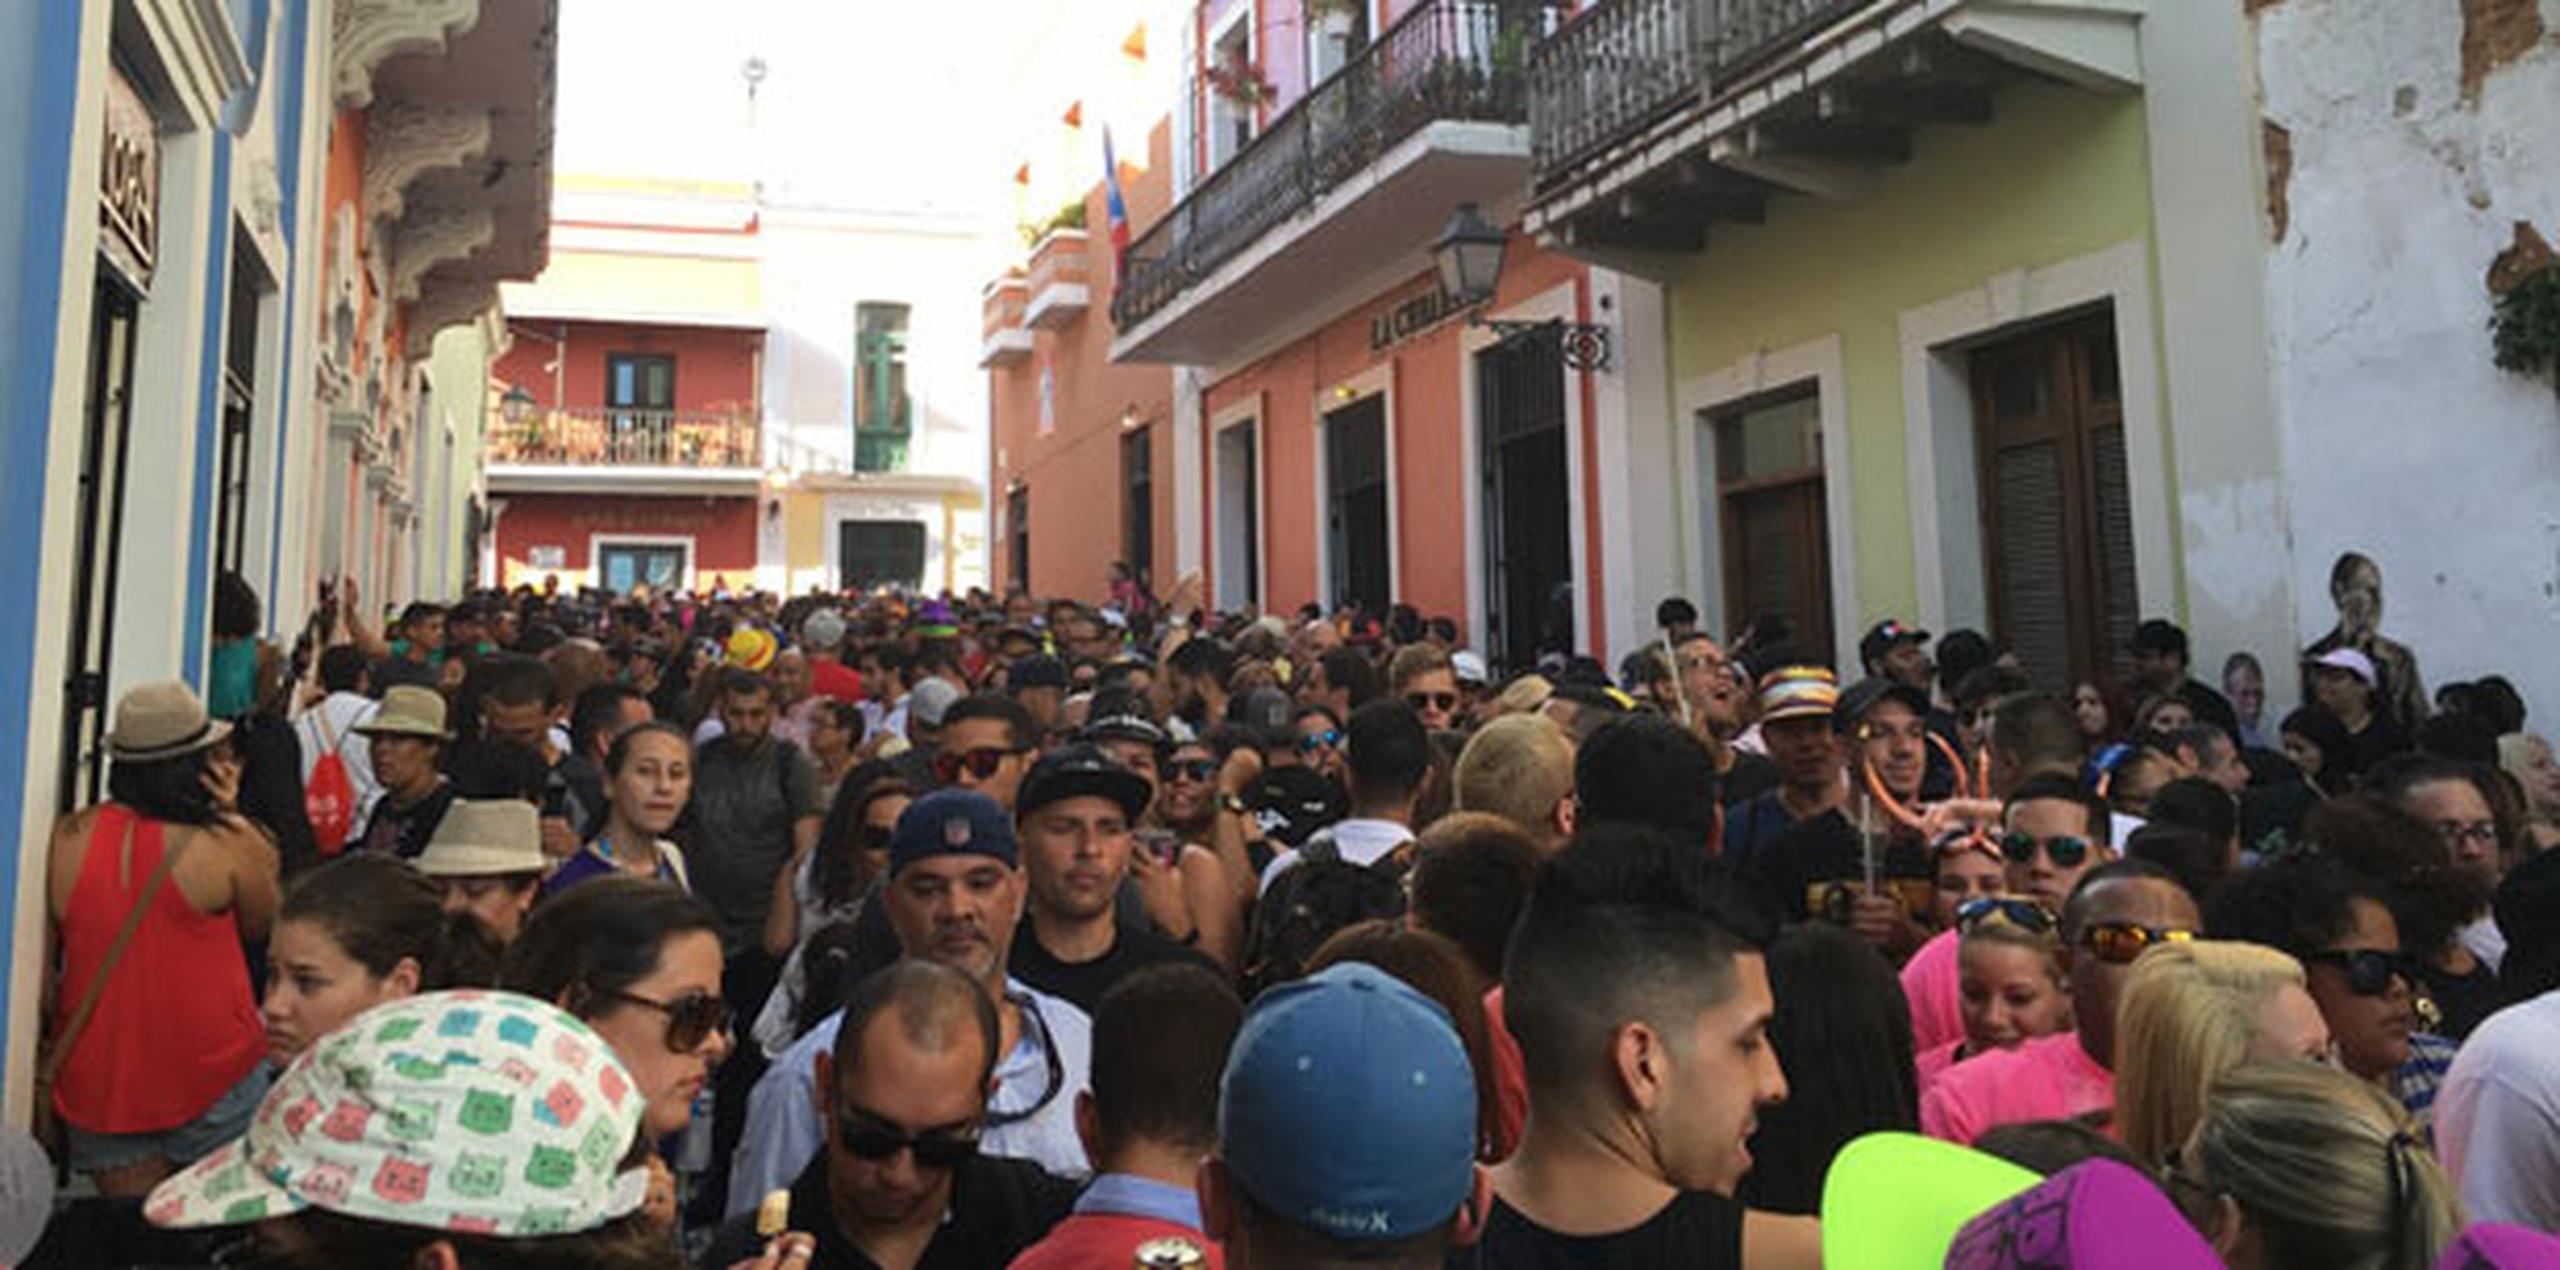 Ayer, sábado, más de un cuarto de millón de personas llegaron hasta el Viejo San Juan, cifra que pudiera superarse hoy.(Suministrada / Emmanel Colón)